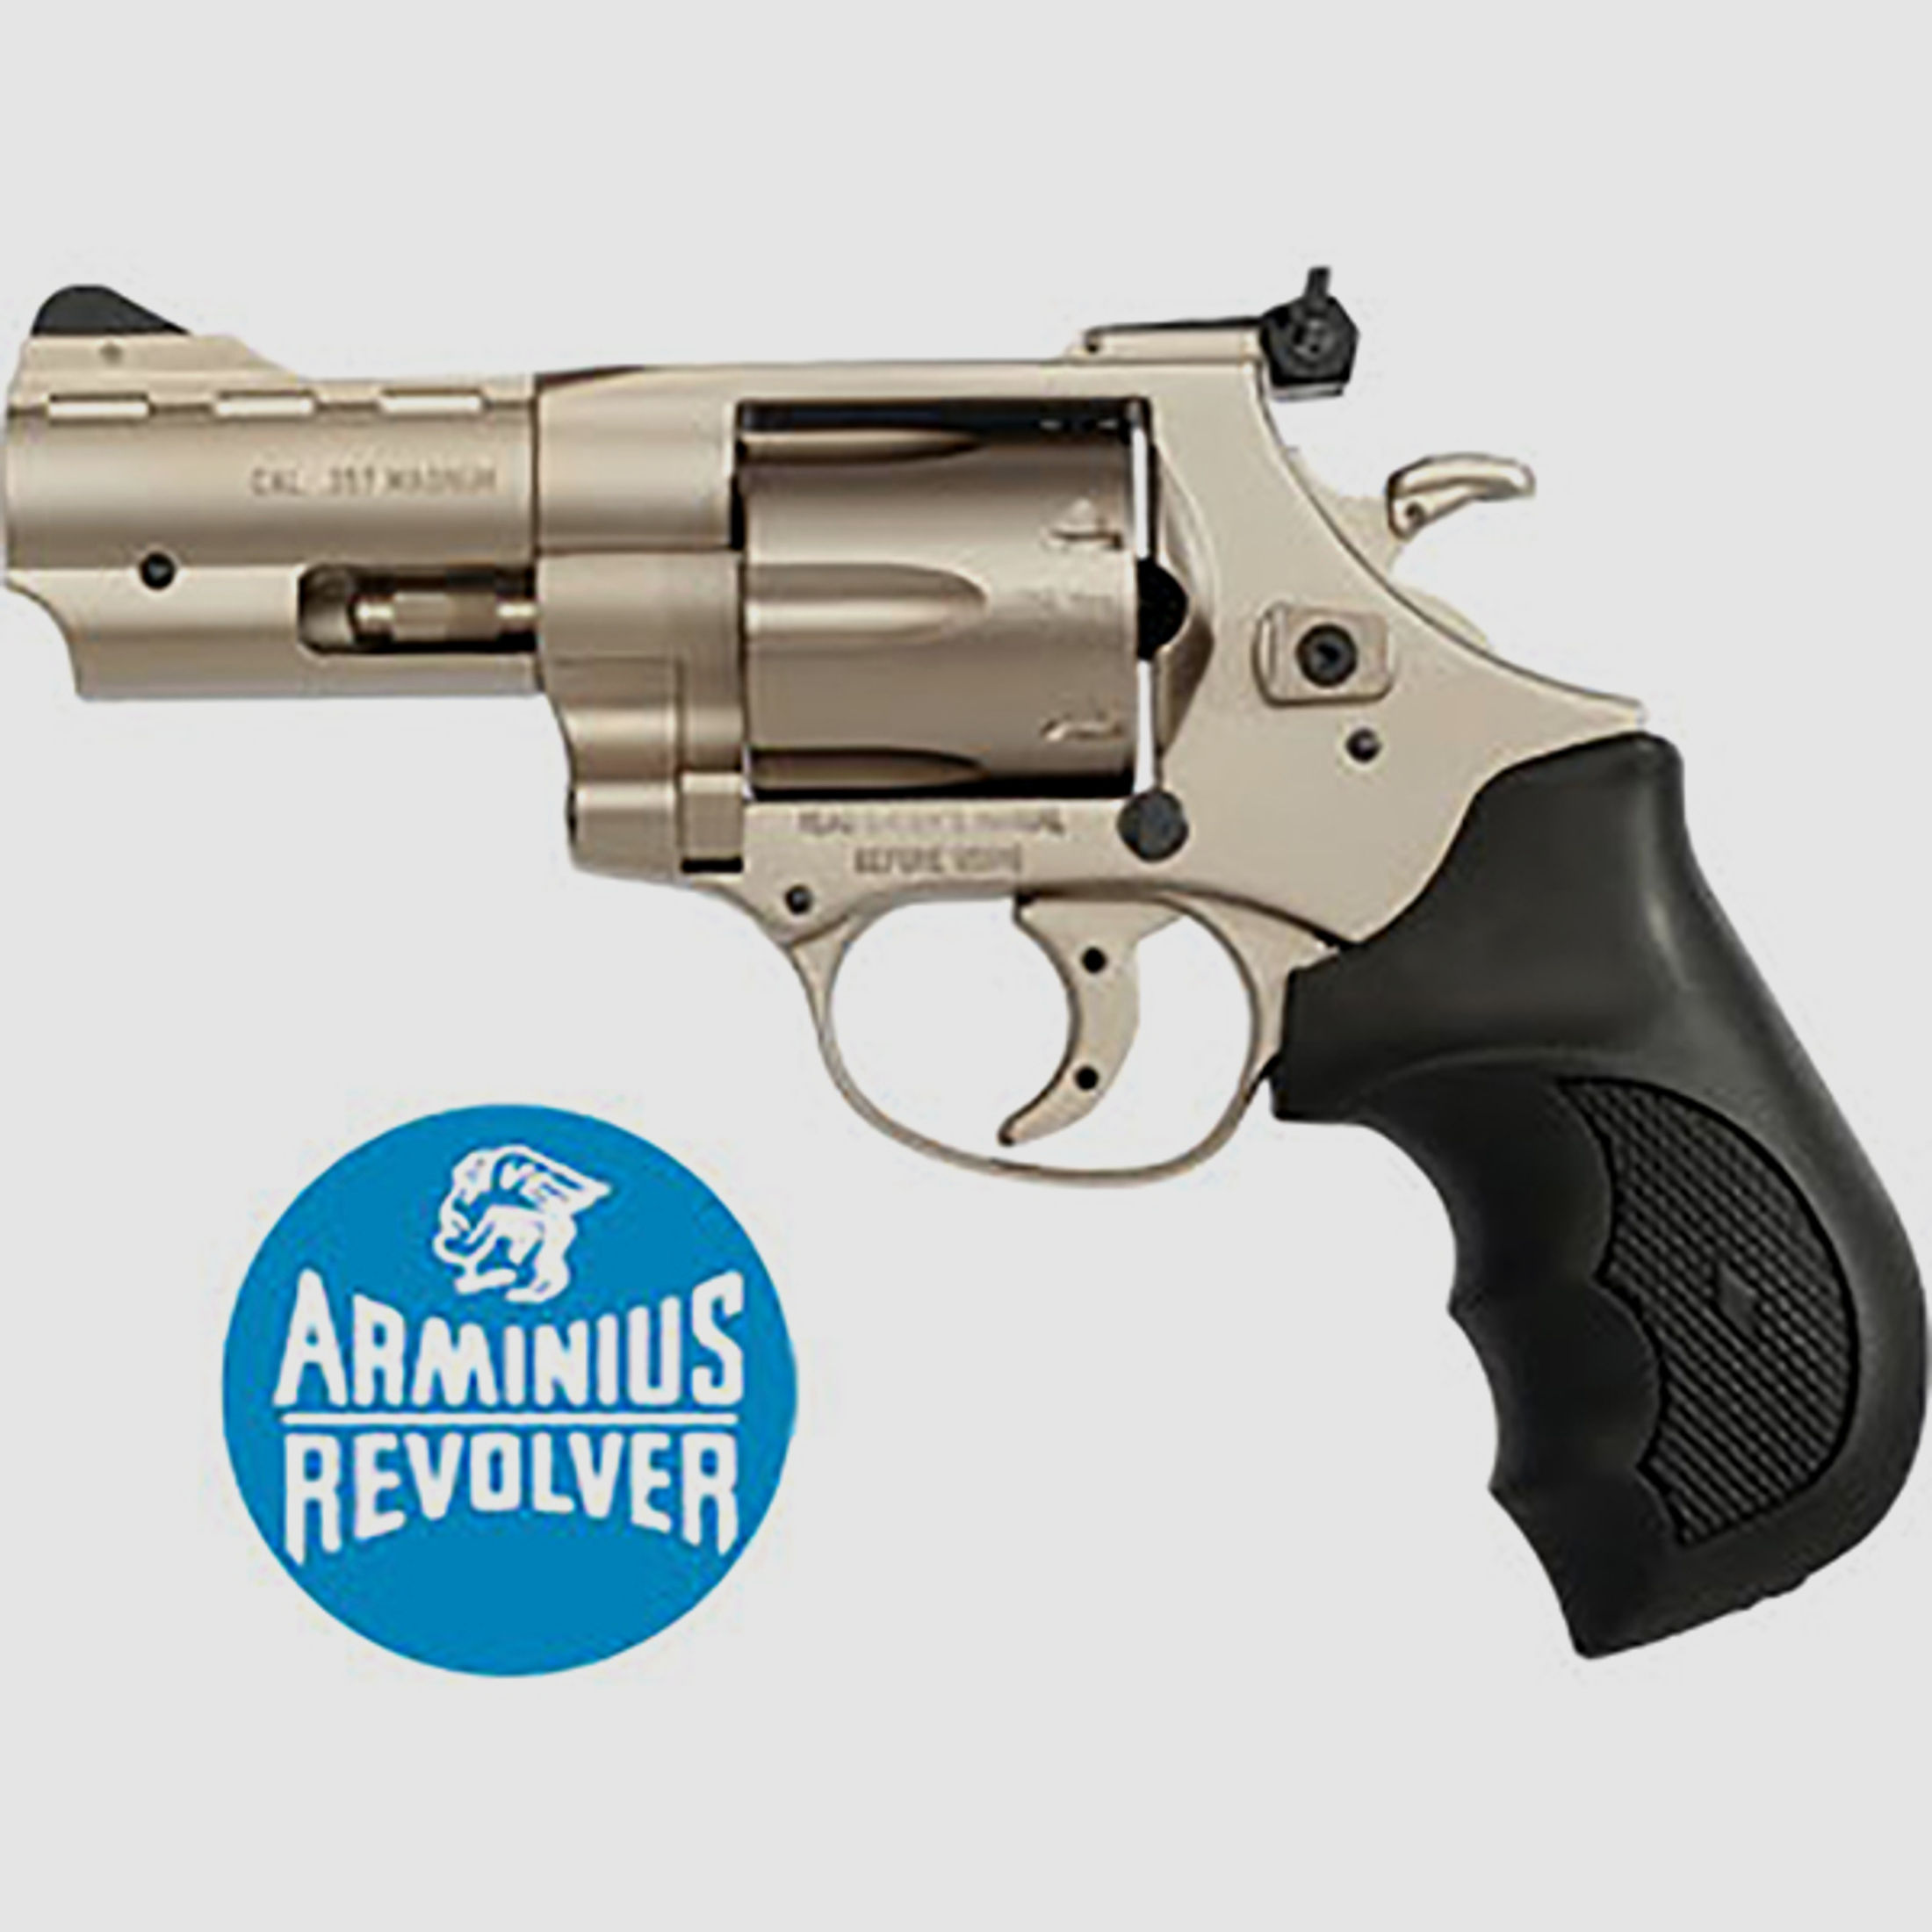 ARMINIUS REVOLVER .357 Mag. 3'' Zoll HW357 Hunter 6-Schuss STAINLESS Silber Fangschusswaffe NEU !